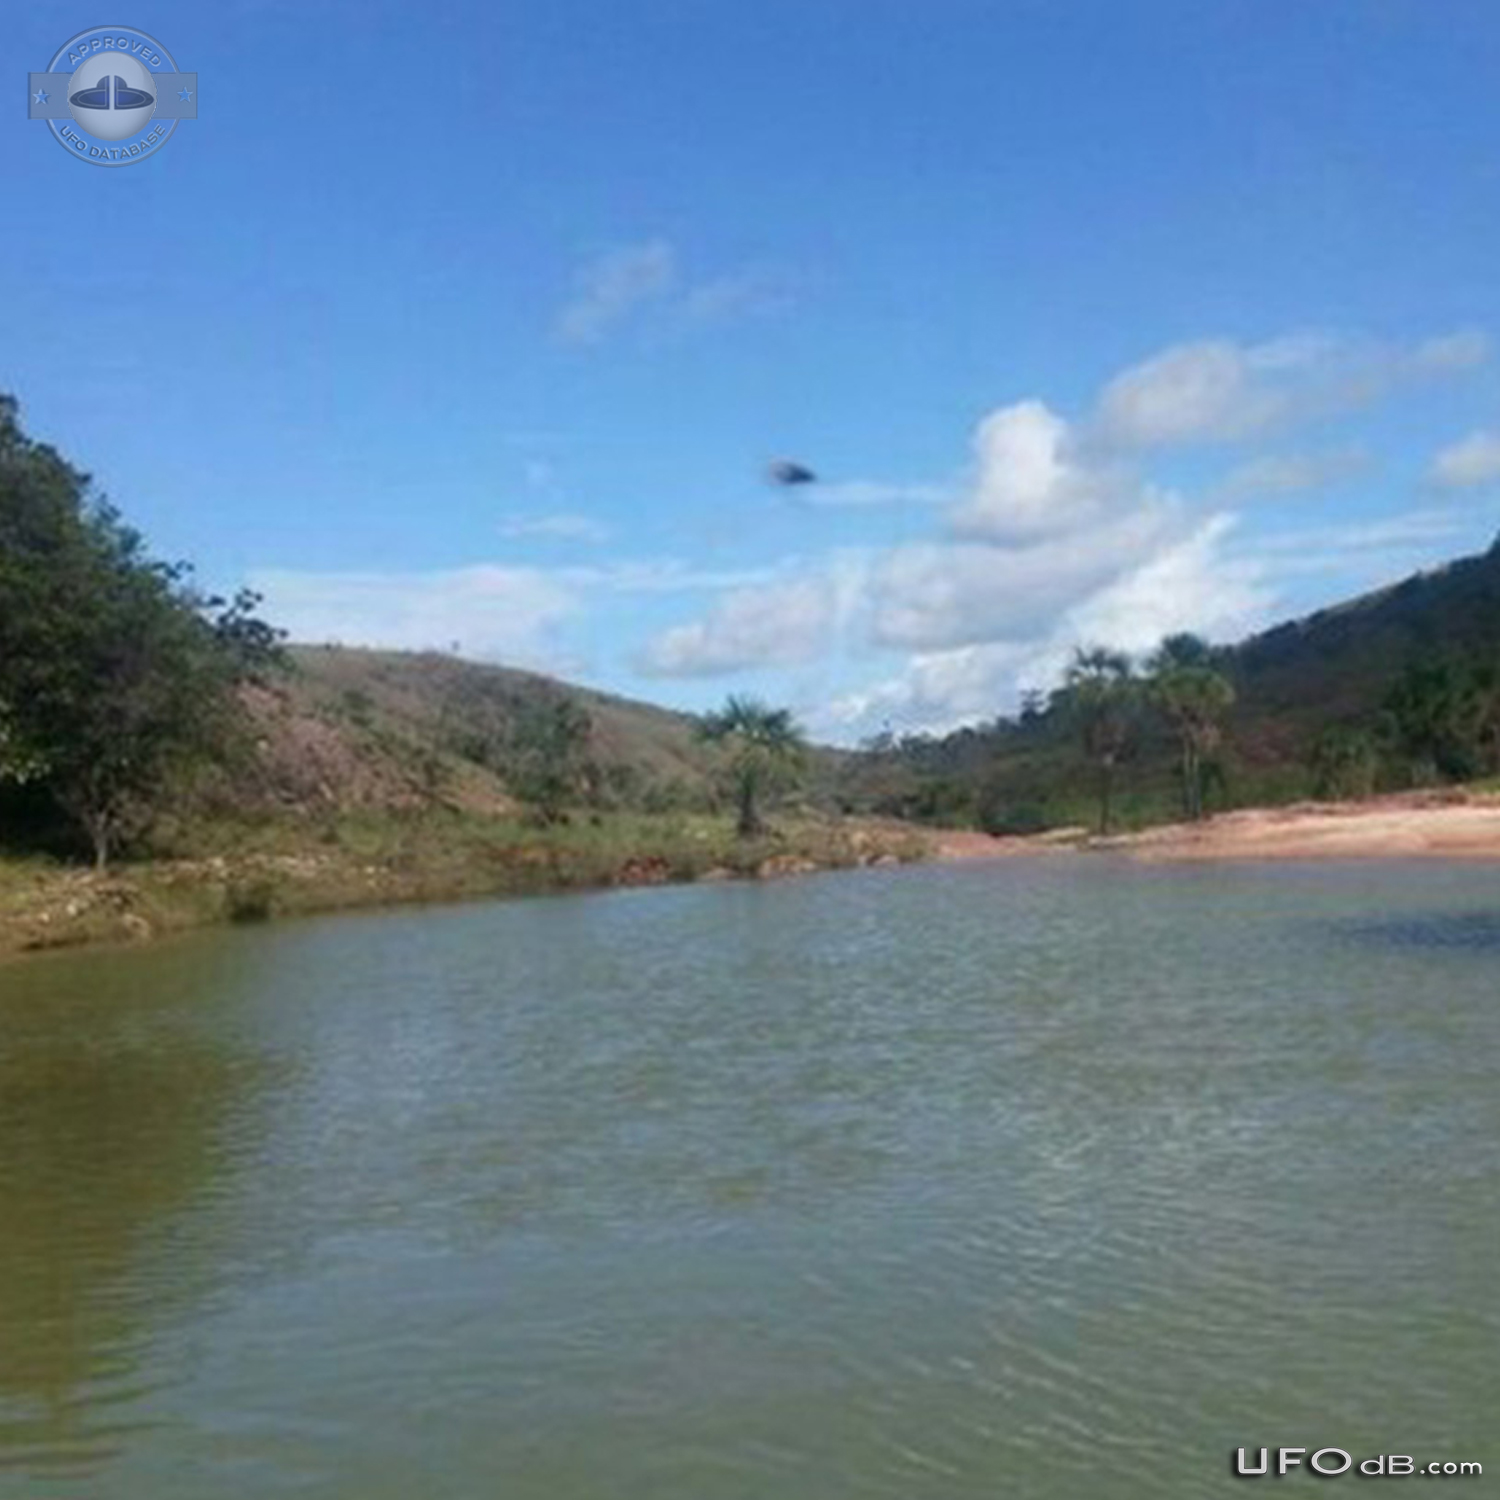 UFO in Raposa Serra do Sol, Roraima in Brazil - July 12 2014 UFO Picture #591-2